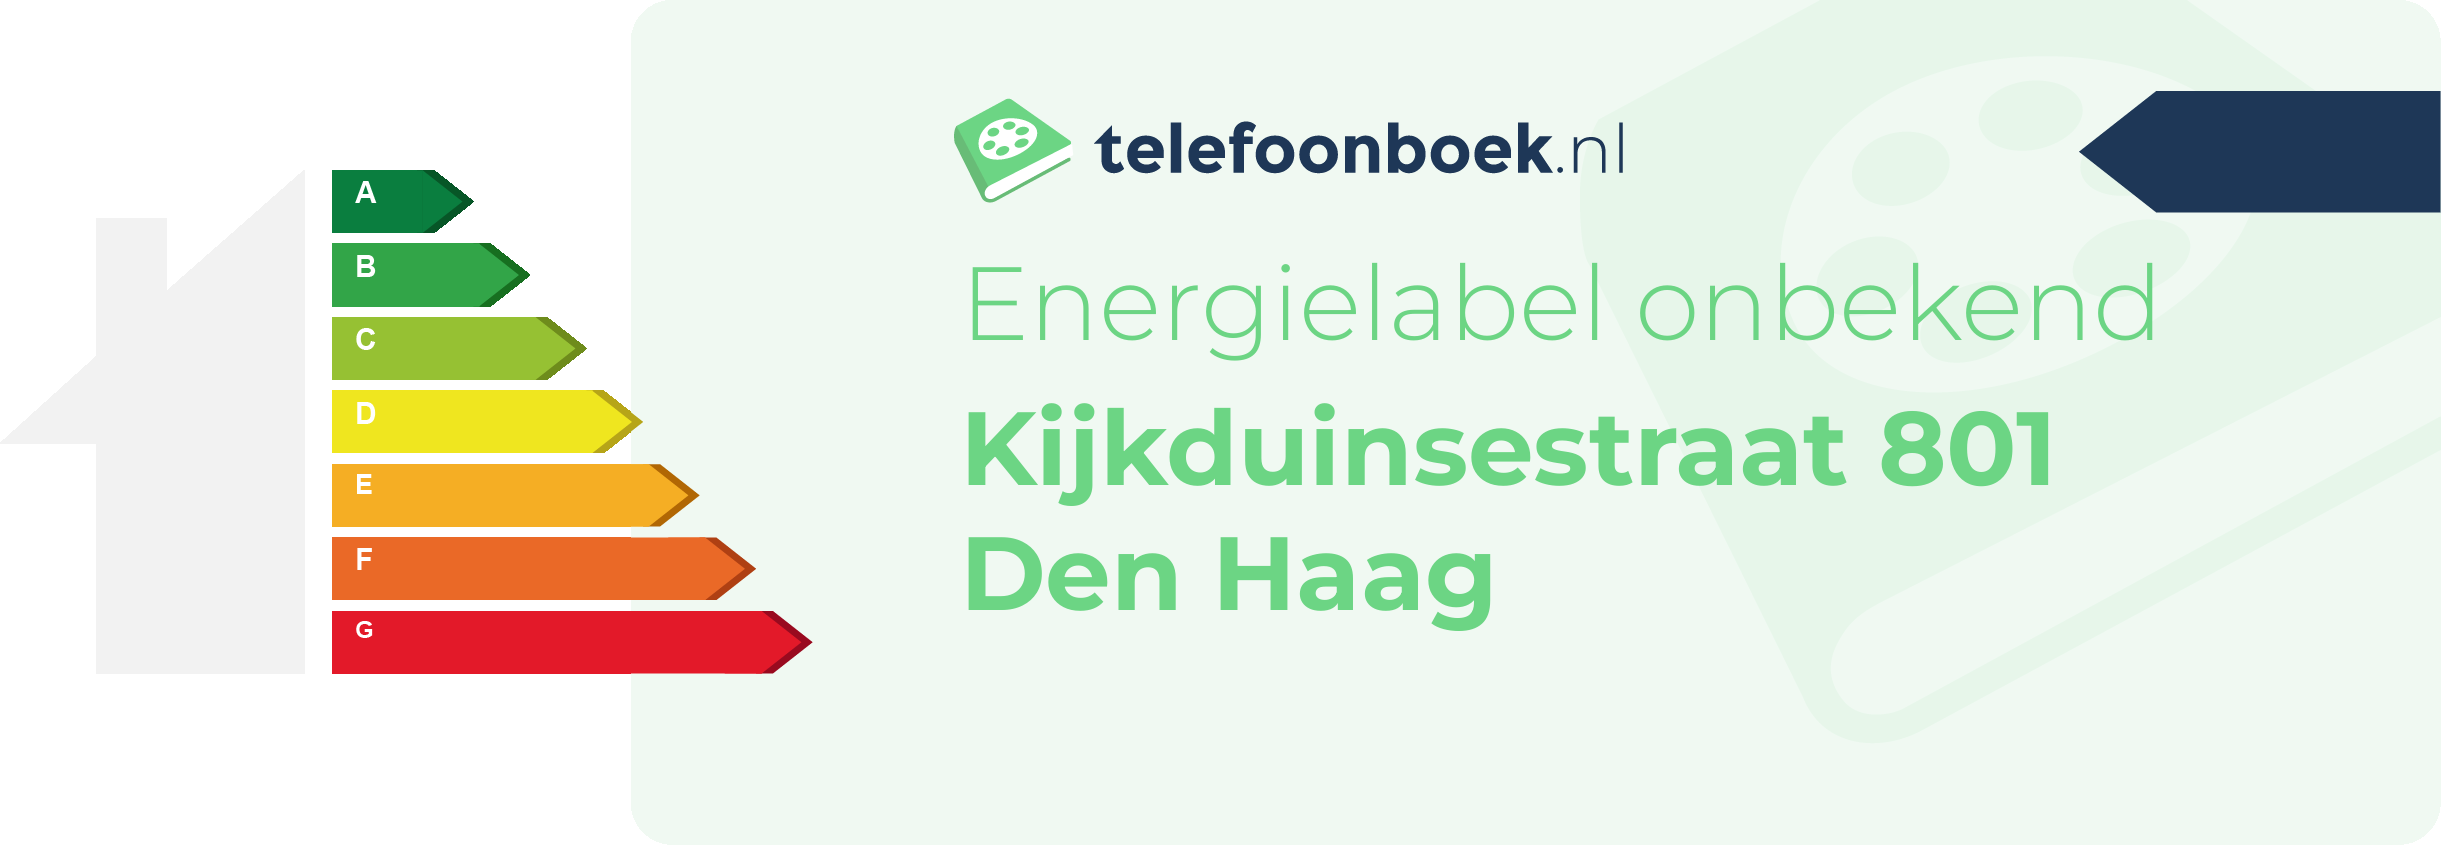 Energielabel Kijkduinsestraat 801 Den Haag